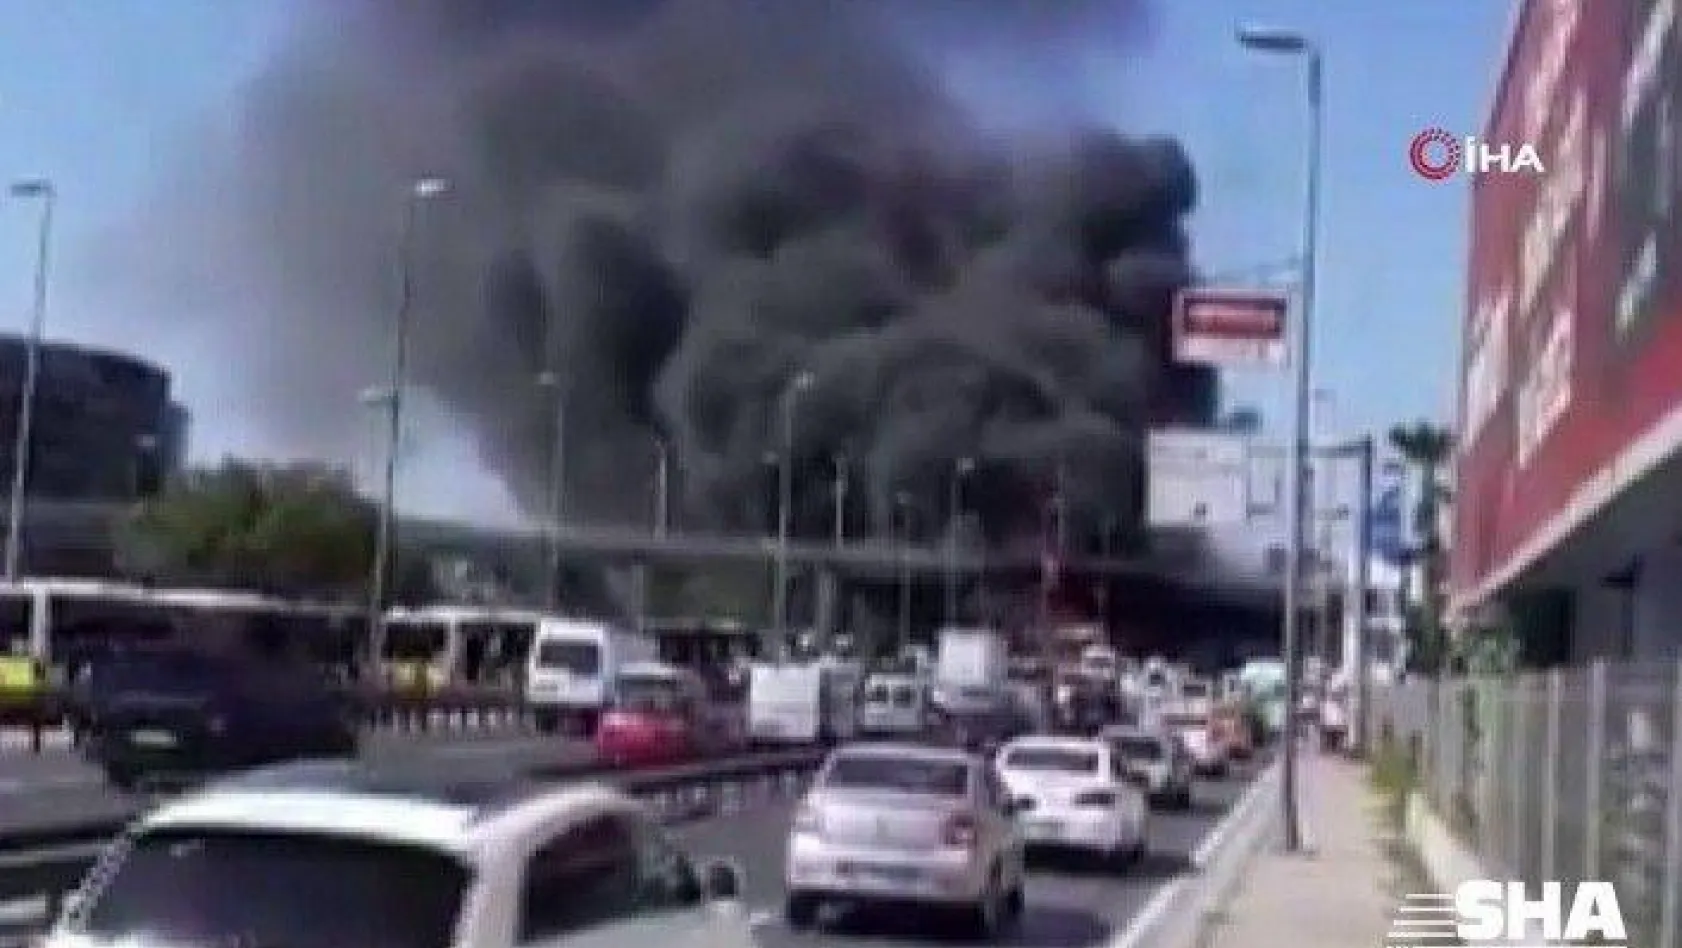 Zeytinburnu'da bir metrobüste yangın çıktı. Yangın nedeniyle olay yerine çok sayıda itfaiye ekibi sevk edildi. Yangından çıkan dumanlar kilometrelerce uzaklıktan göründü.